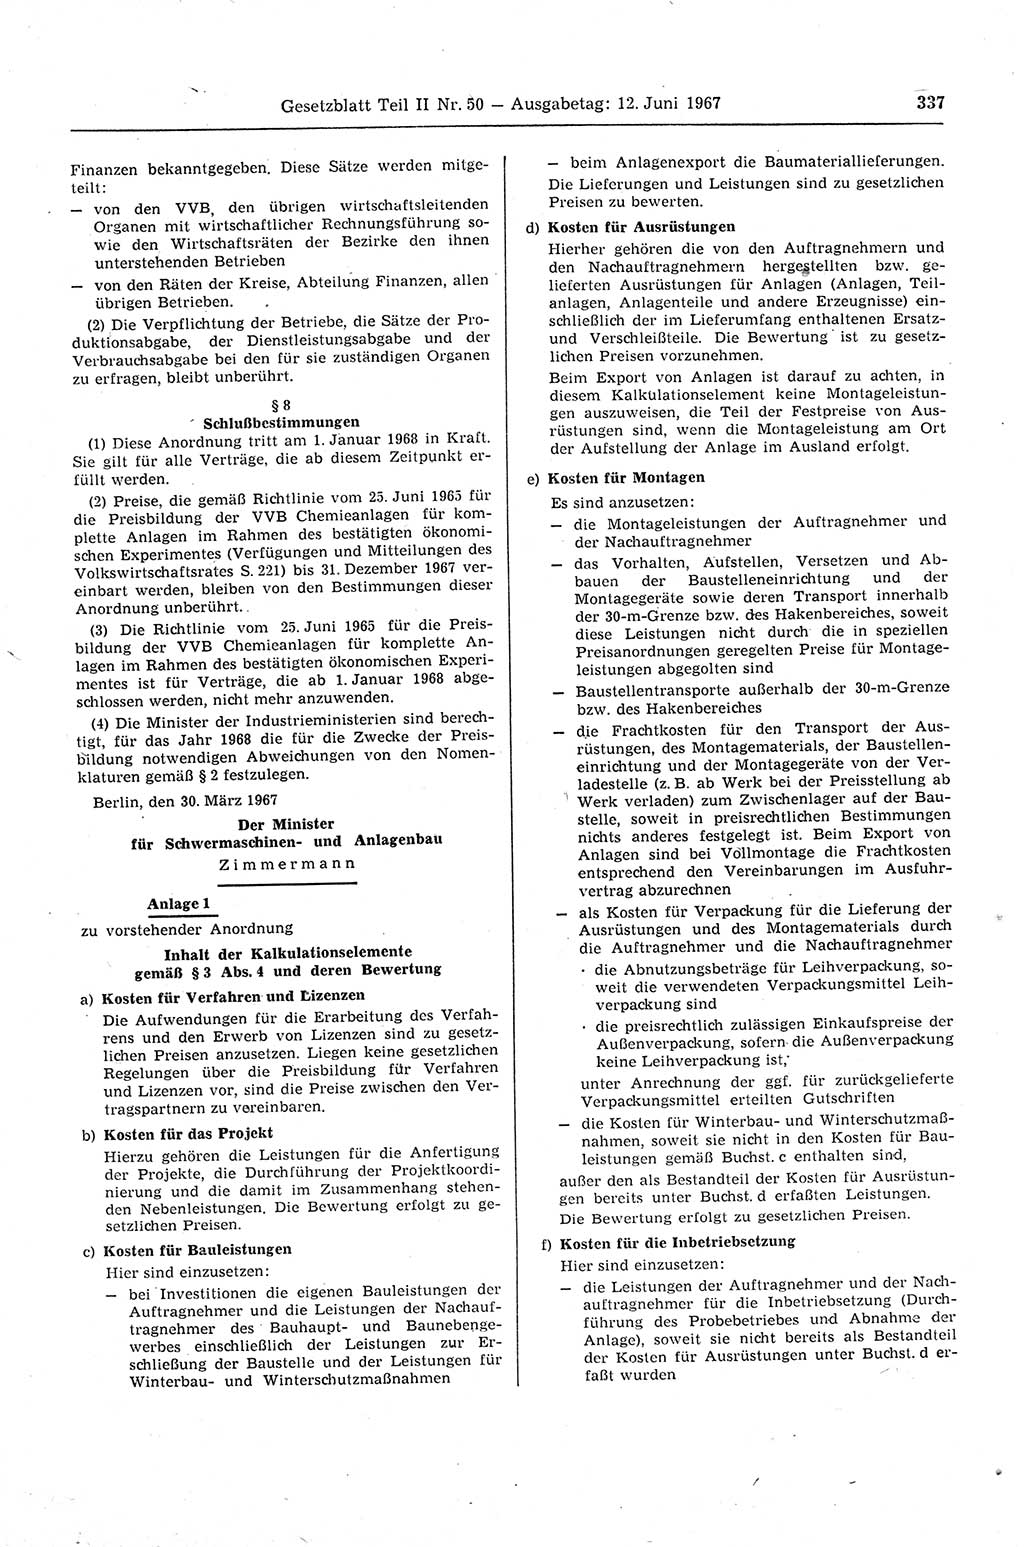 Gesetzblatt (GBl.) der Deutschen Demokratischen Republik (DDR) Teil ⅠⅠ 1967, Seite 337 (GBl. DDR ⅠⅠ 1967, S. 337)